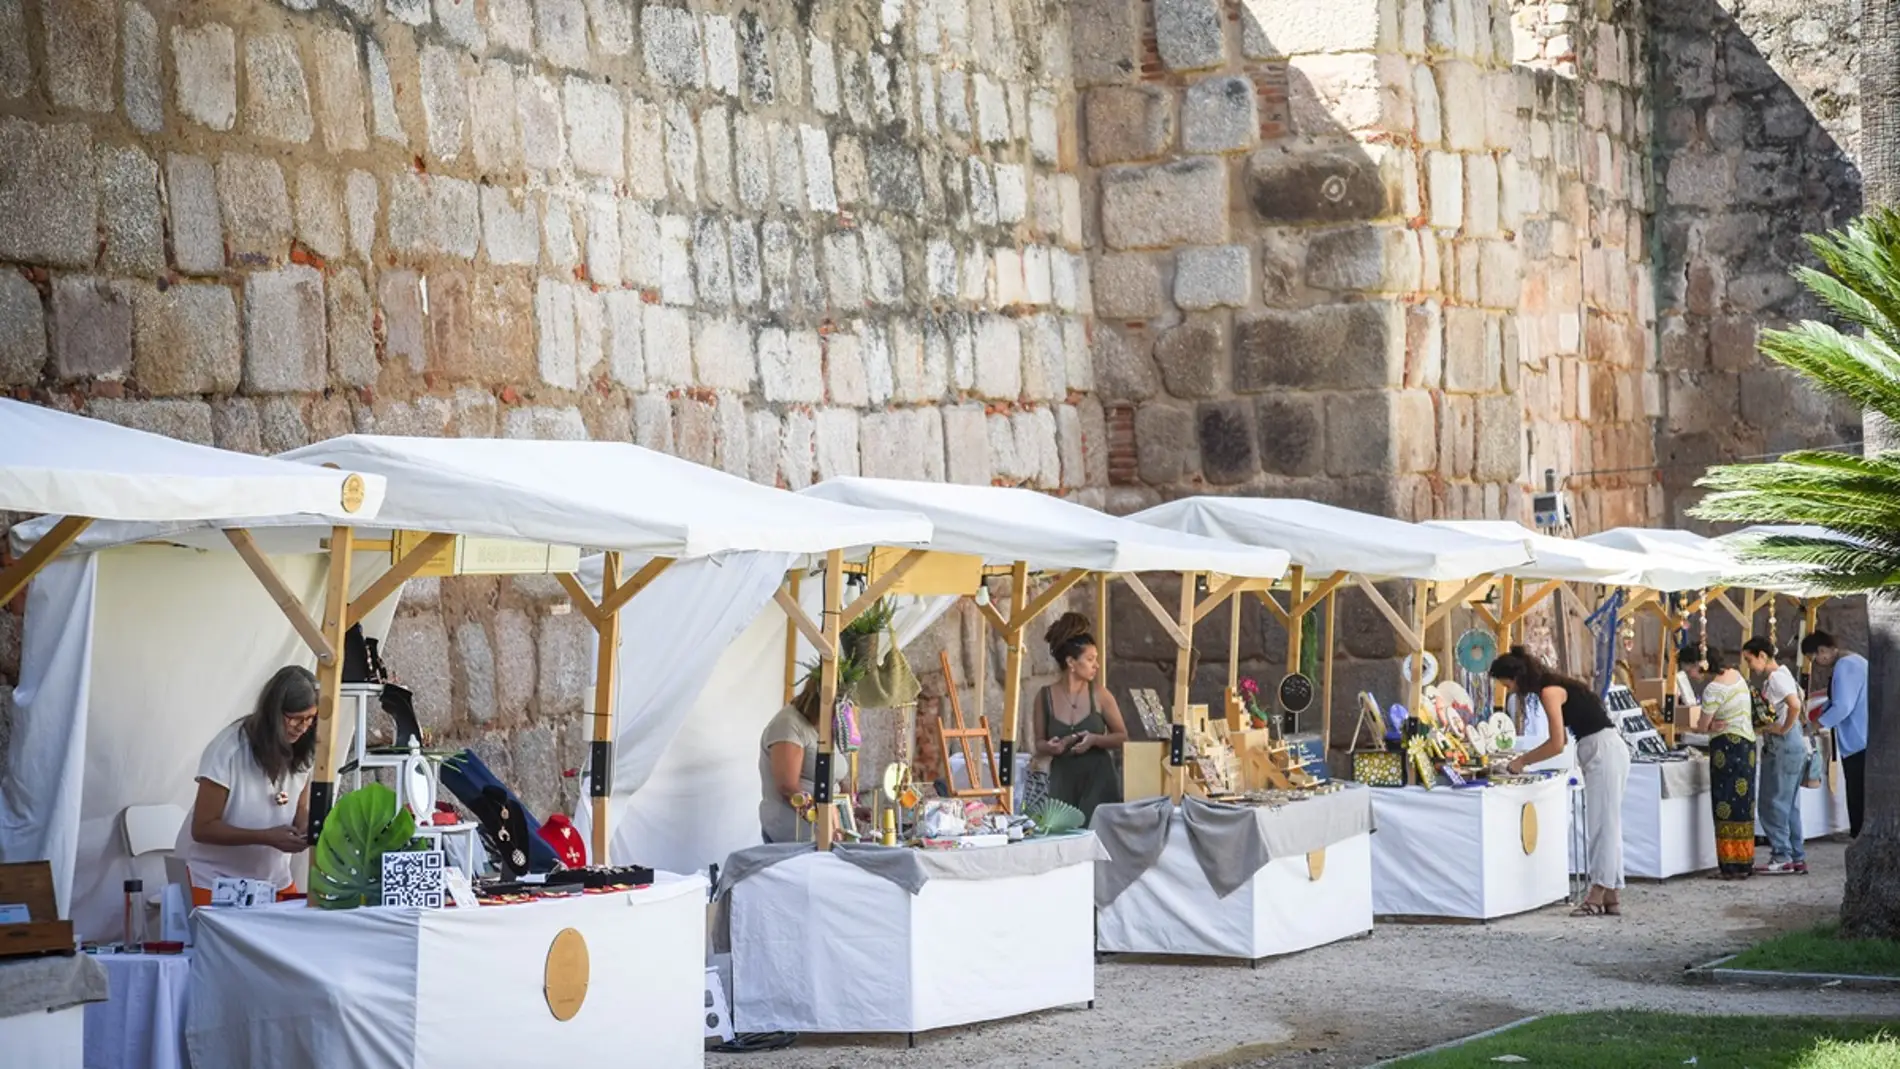 El mercado artesano “A mano sin prisas” abre todo el fin de semana en el Parque de las Méridas del Mundo